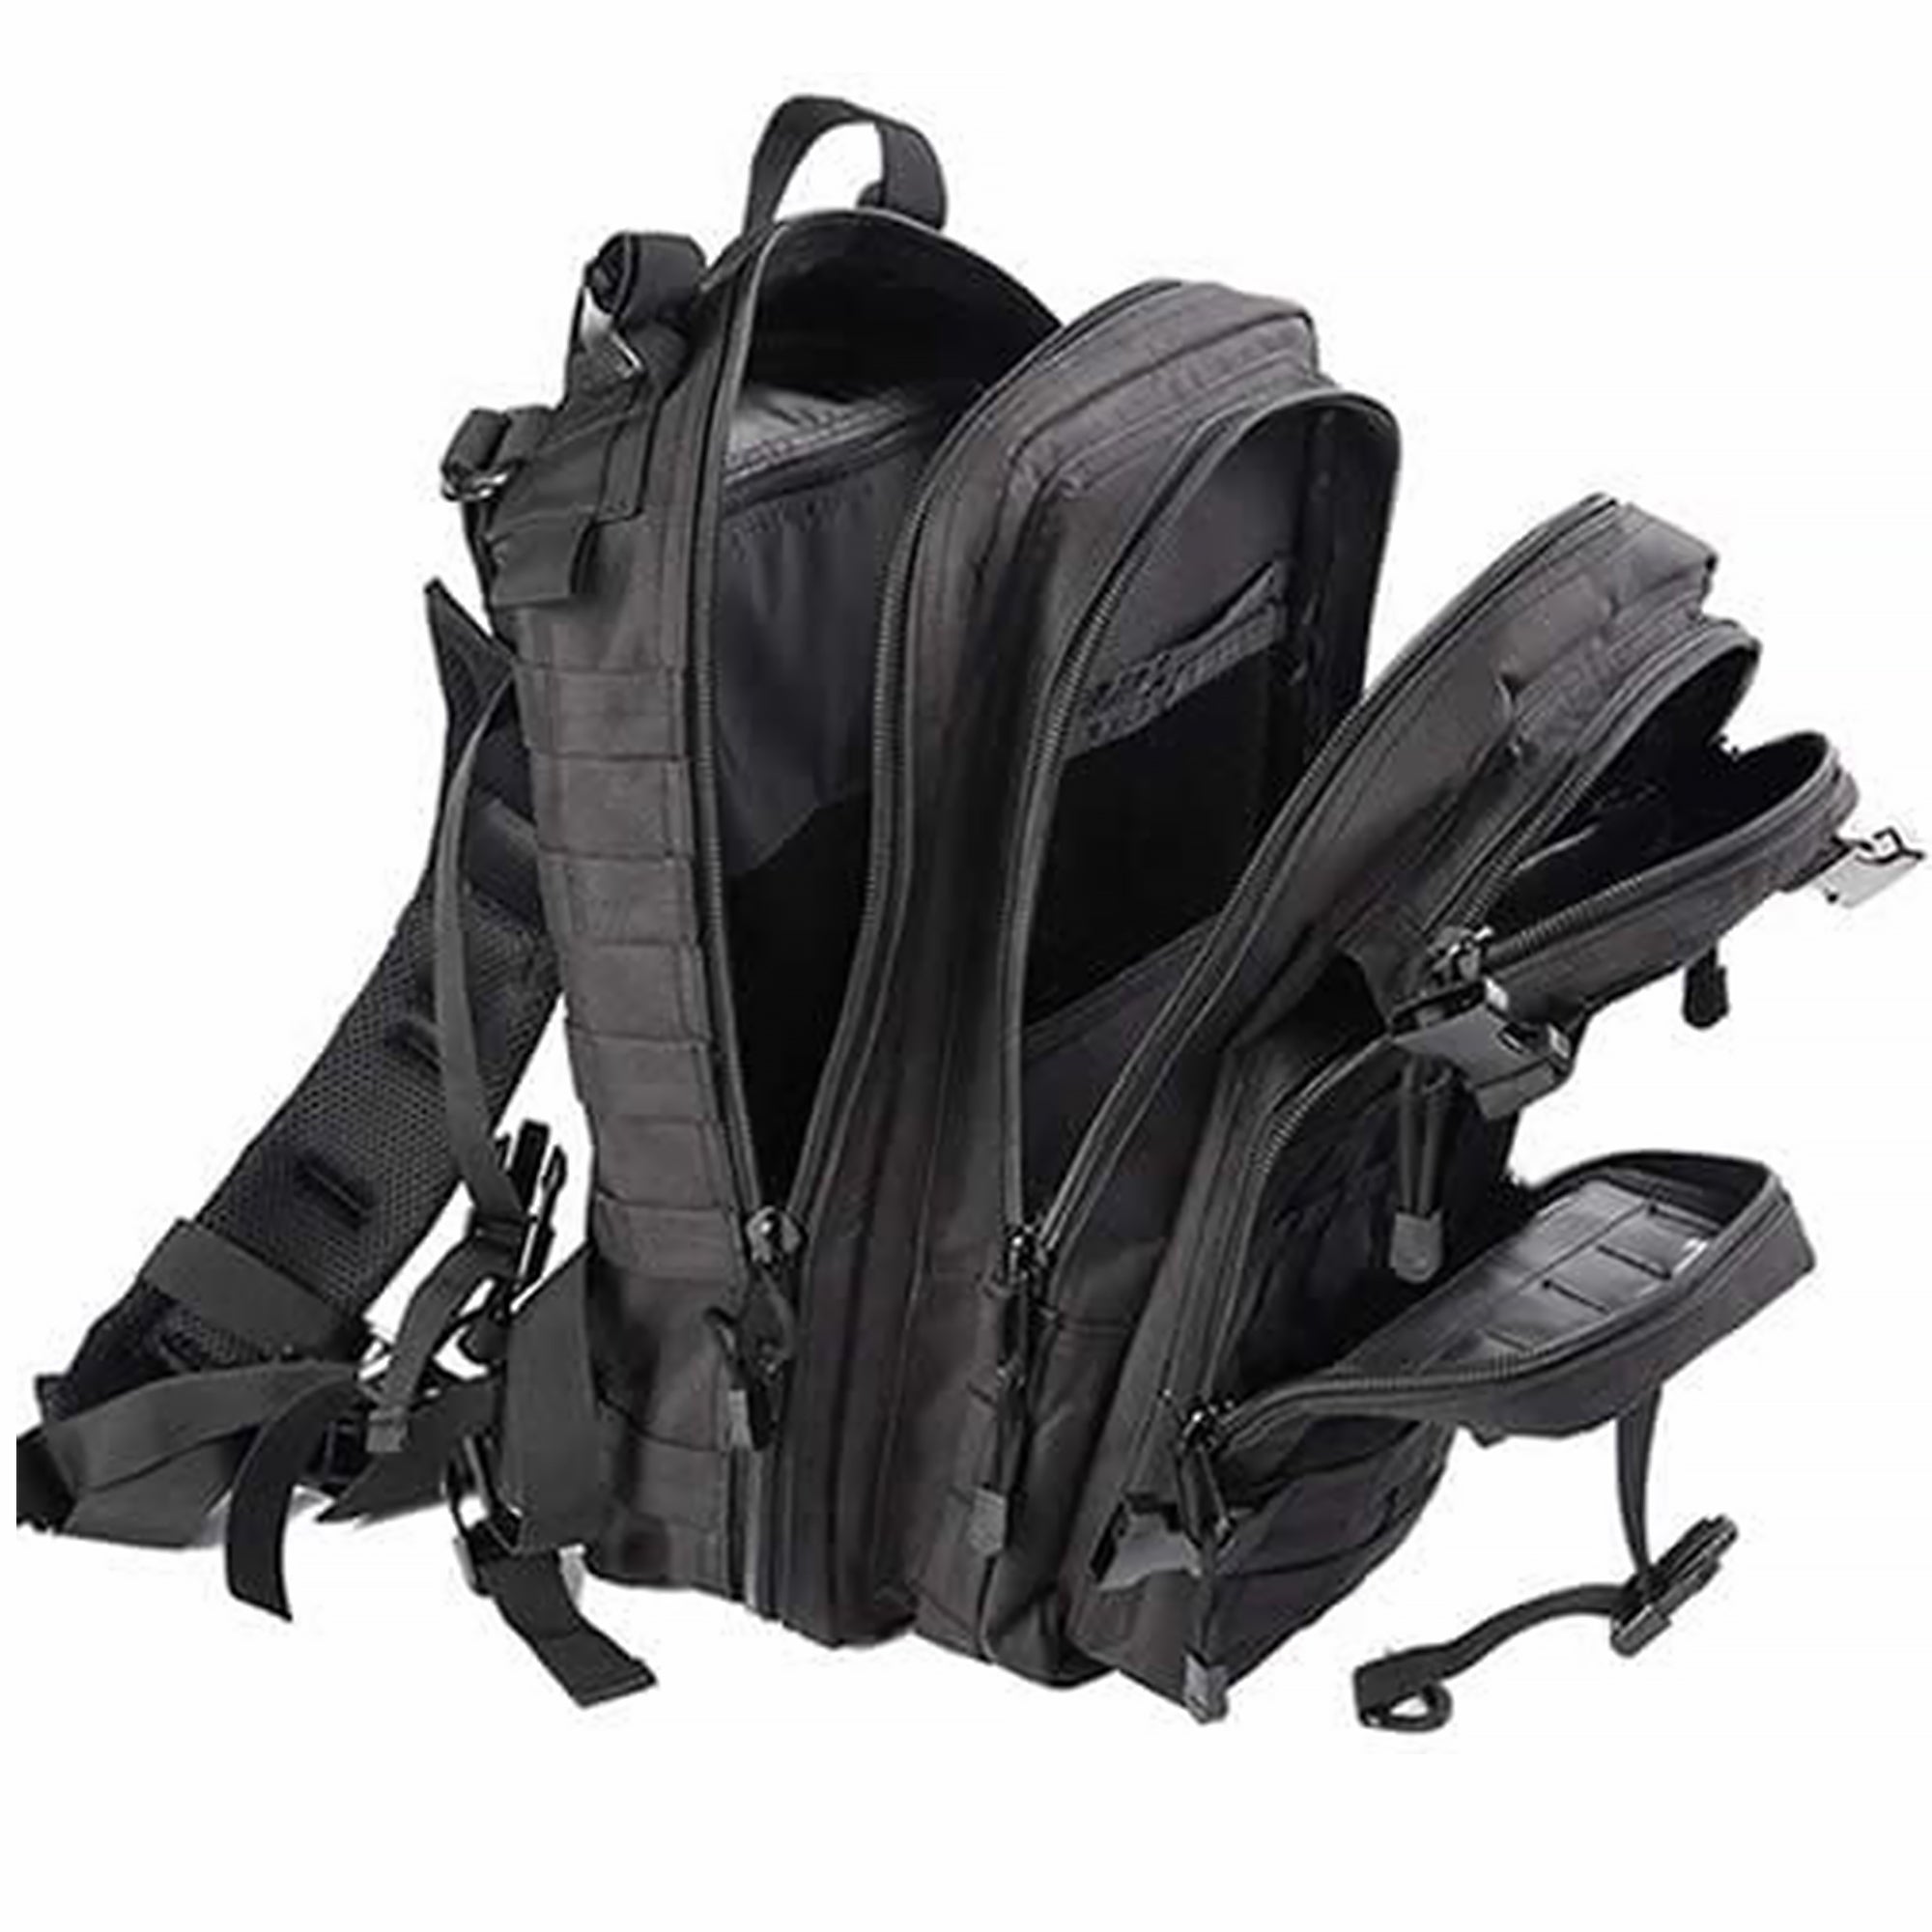 STRIKE35 Backpack